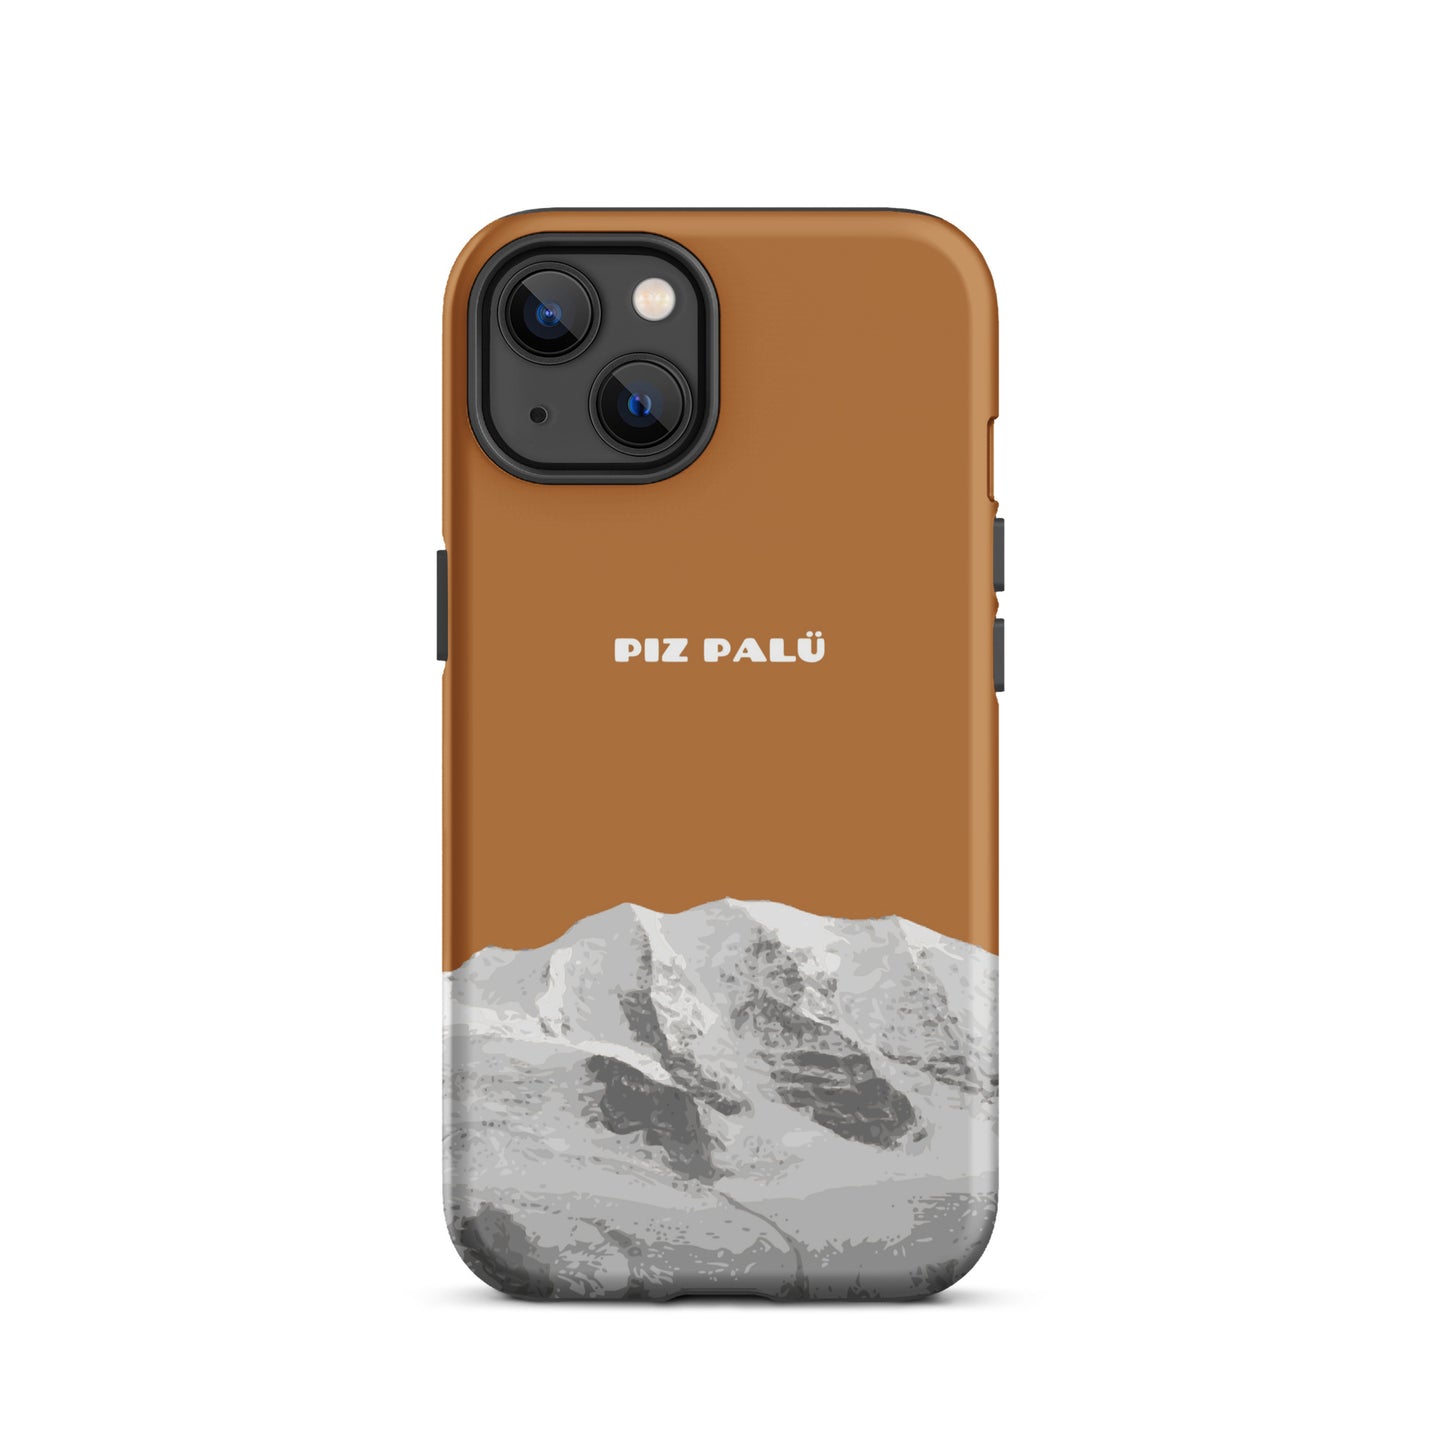 Hülle für das iPhone 13 Max von Apple in der Farbe Kupfer, dass den Piz Palü in Graubünden zeigt.